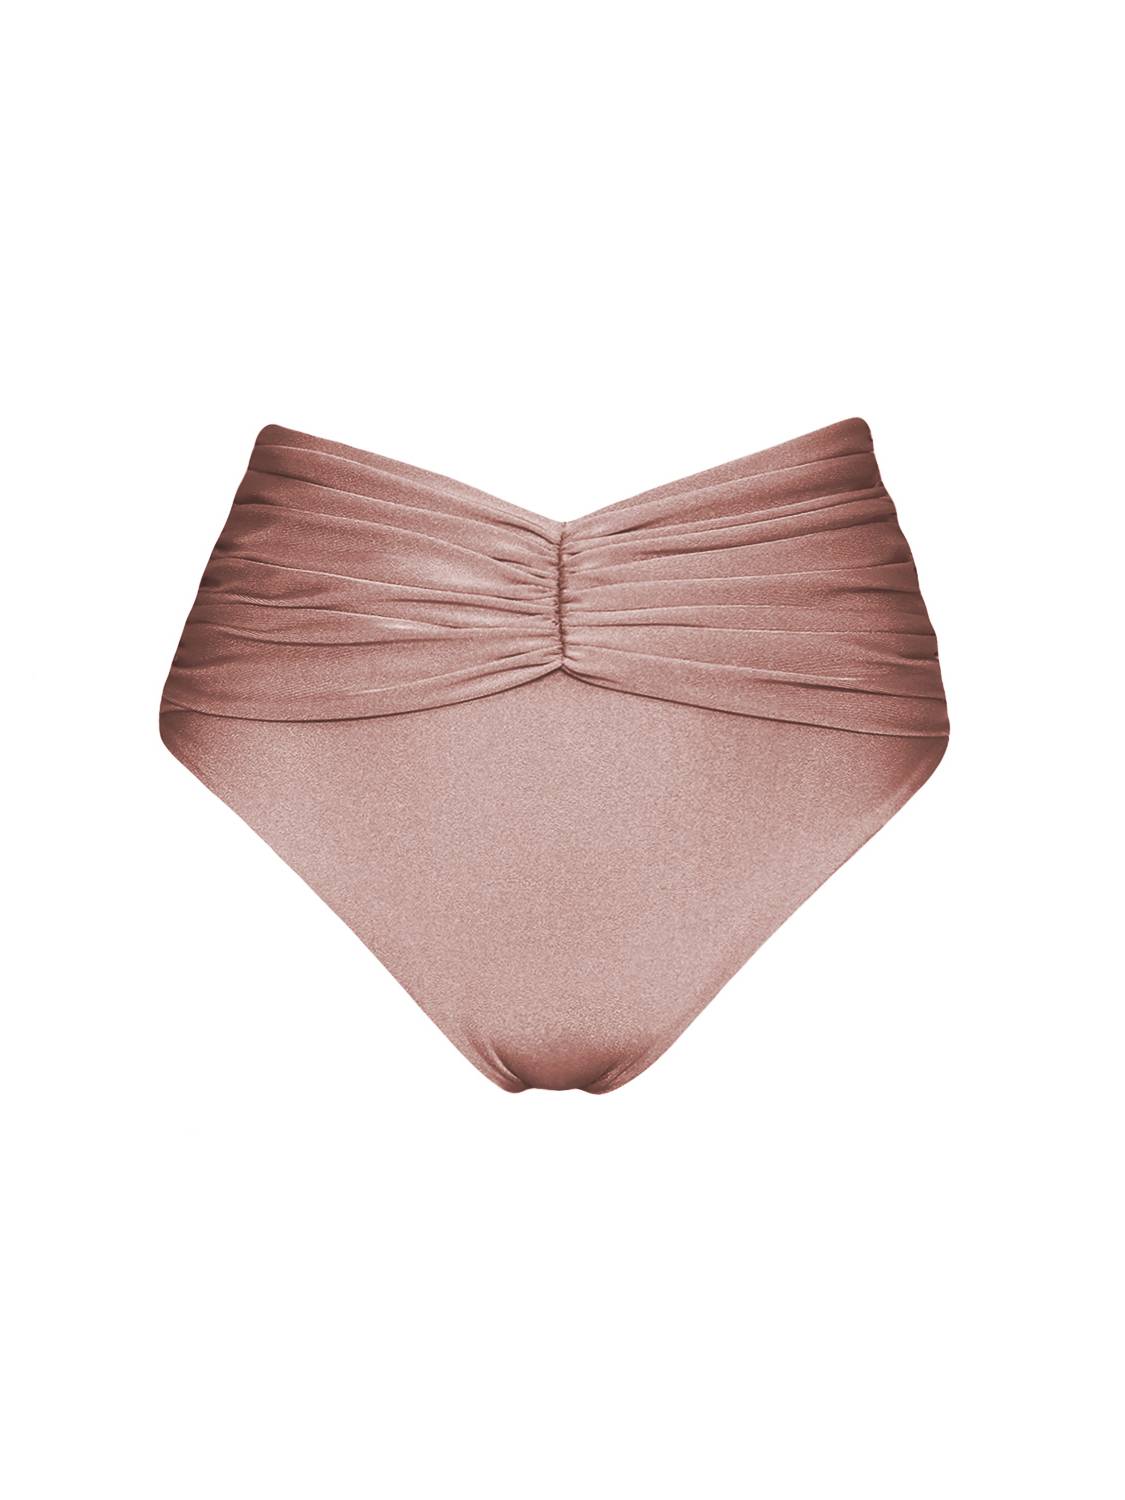 polska marka dół bikini-marszczony błyszczący rose gold różowy pudrowy-zloty-wiazany-trojkaty-majtki-matala-z-wysokim-stanem-rose gold różowy-shiny draped high waist rose pink bottom swimwear swimsuit